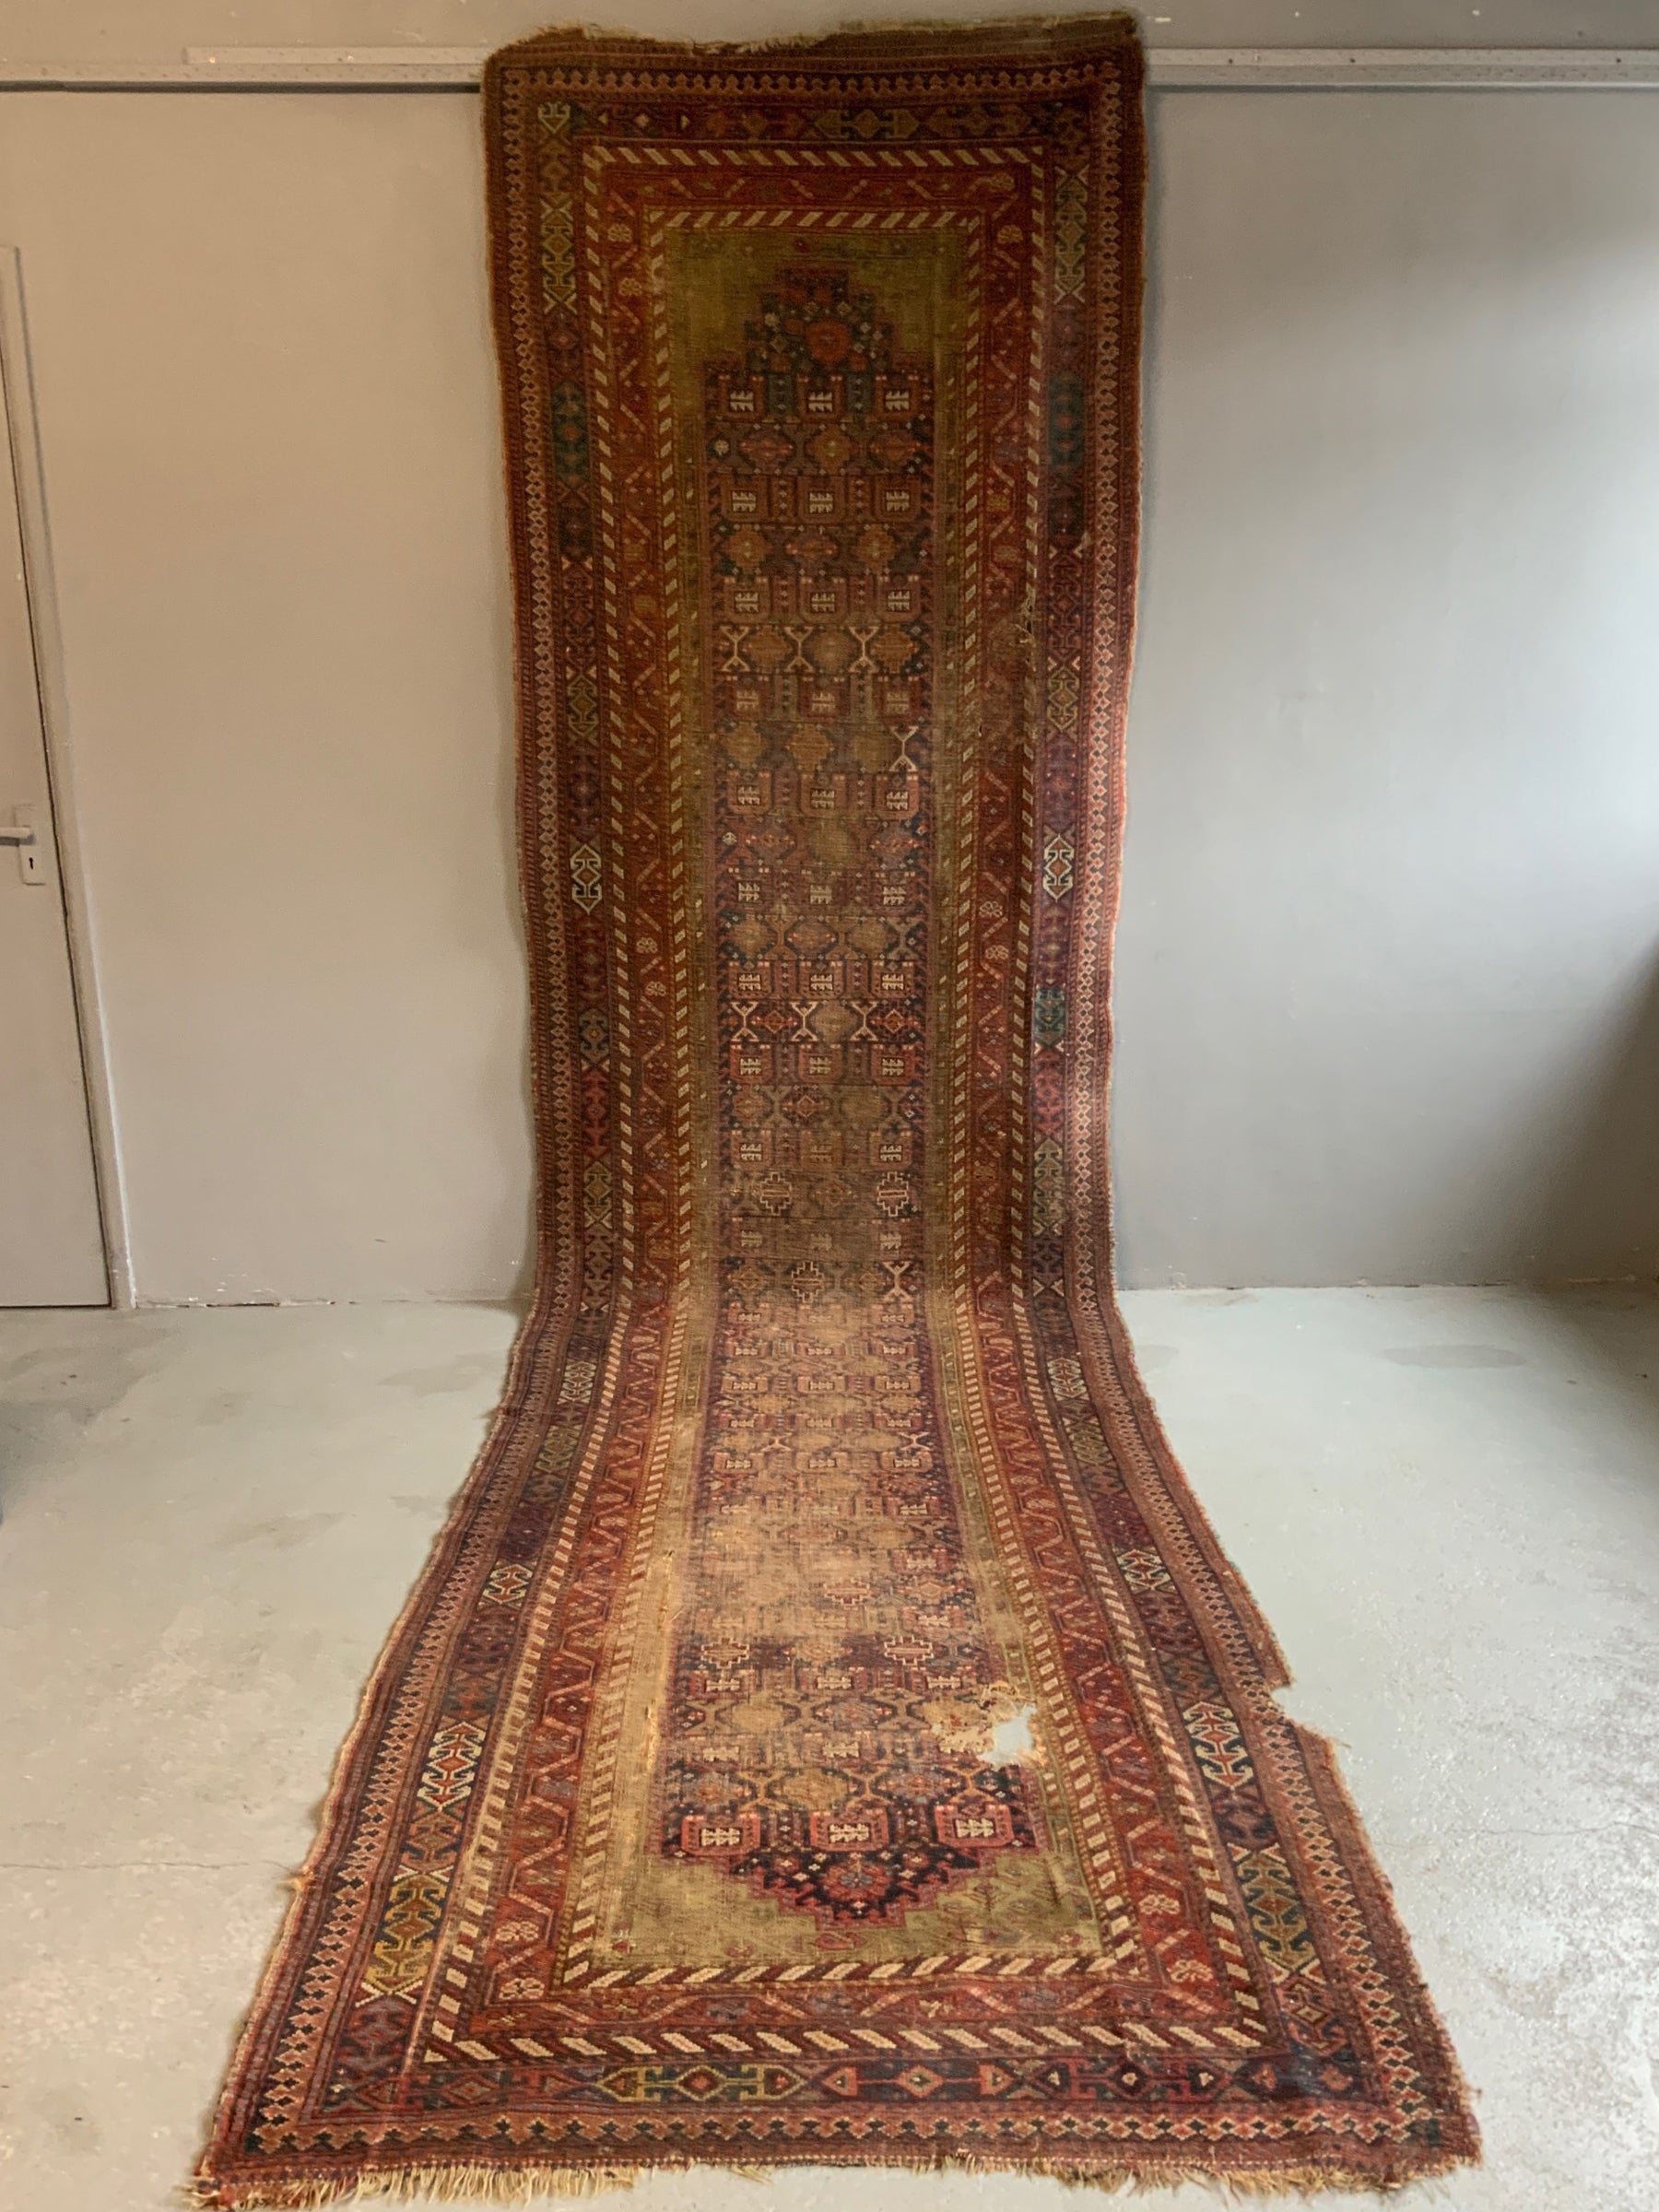 Antique Hamadan gallery carpet / runner (466 x 120cm)